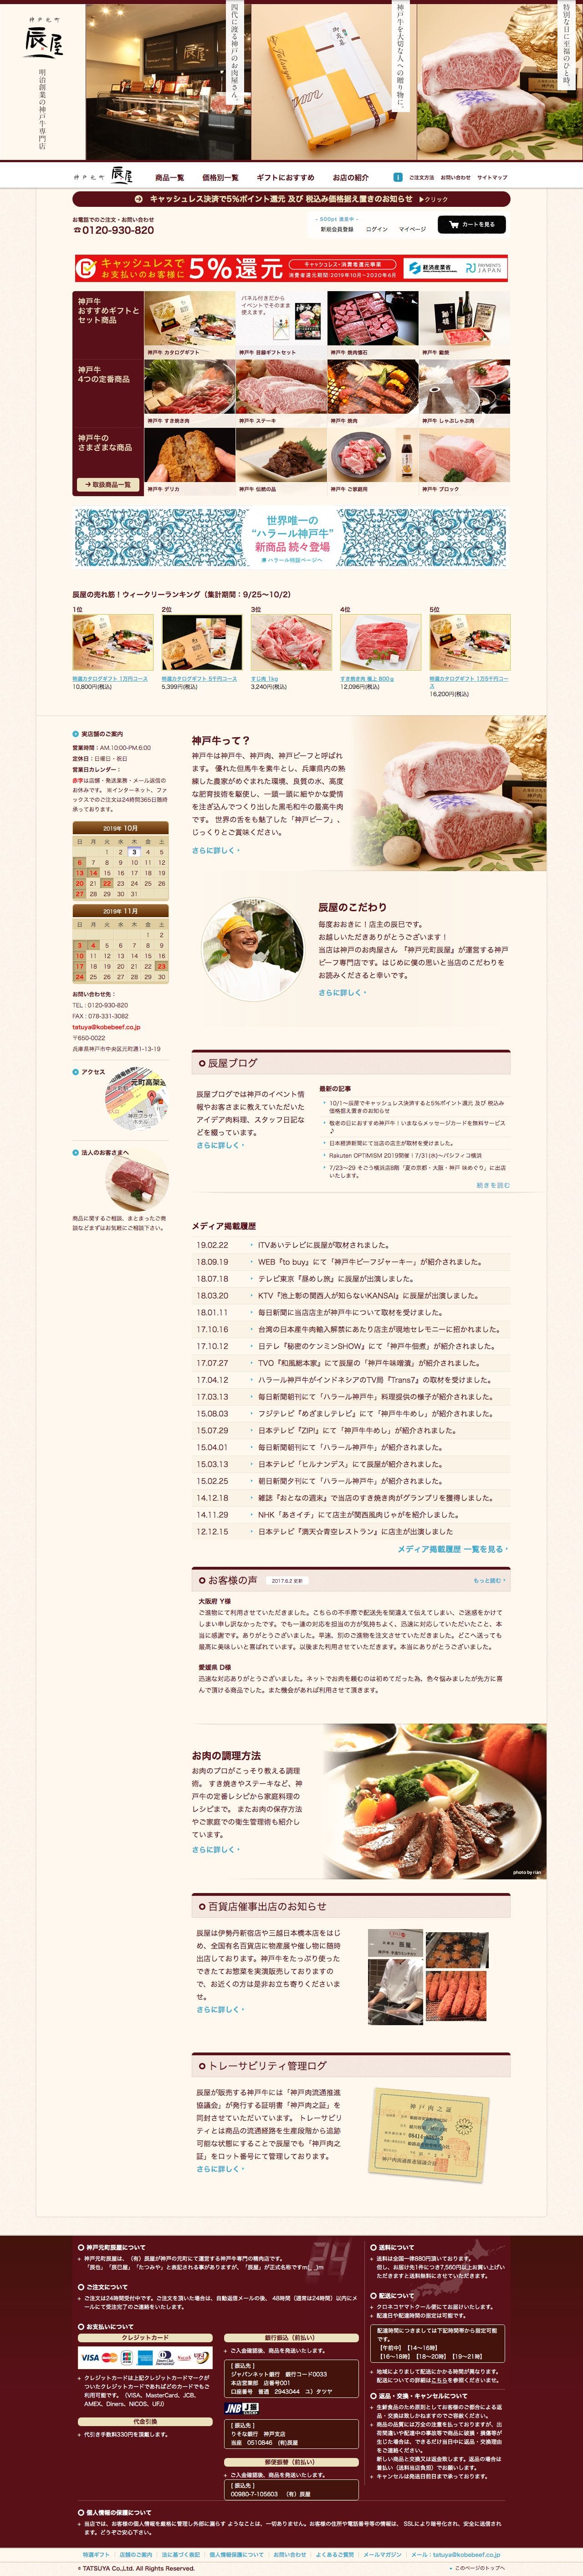 神戸牛 通販｜神戸元町辰屋｜牛肉 / 和牛 / ギフトのスクリーンショット - トップページ